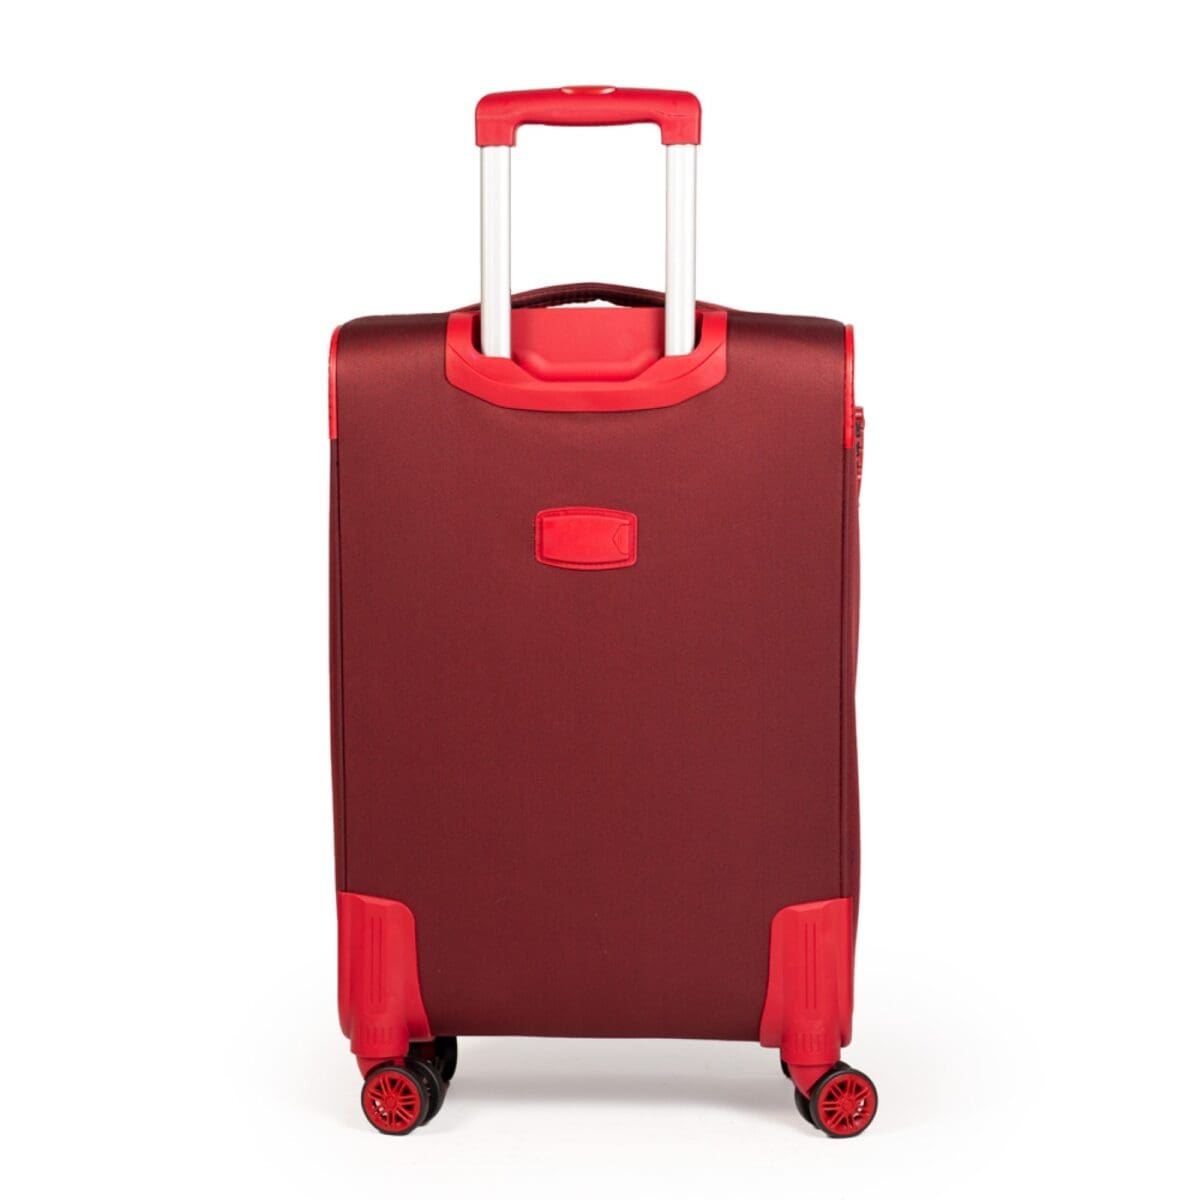 Πίσω πλευρά βαλίτσας με ταμπελάκι για στοιχεία σε μπορντό χρώμα